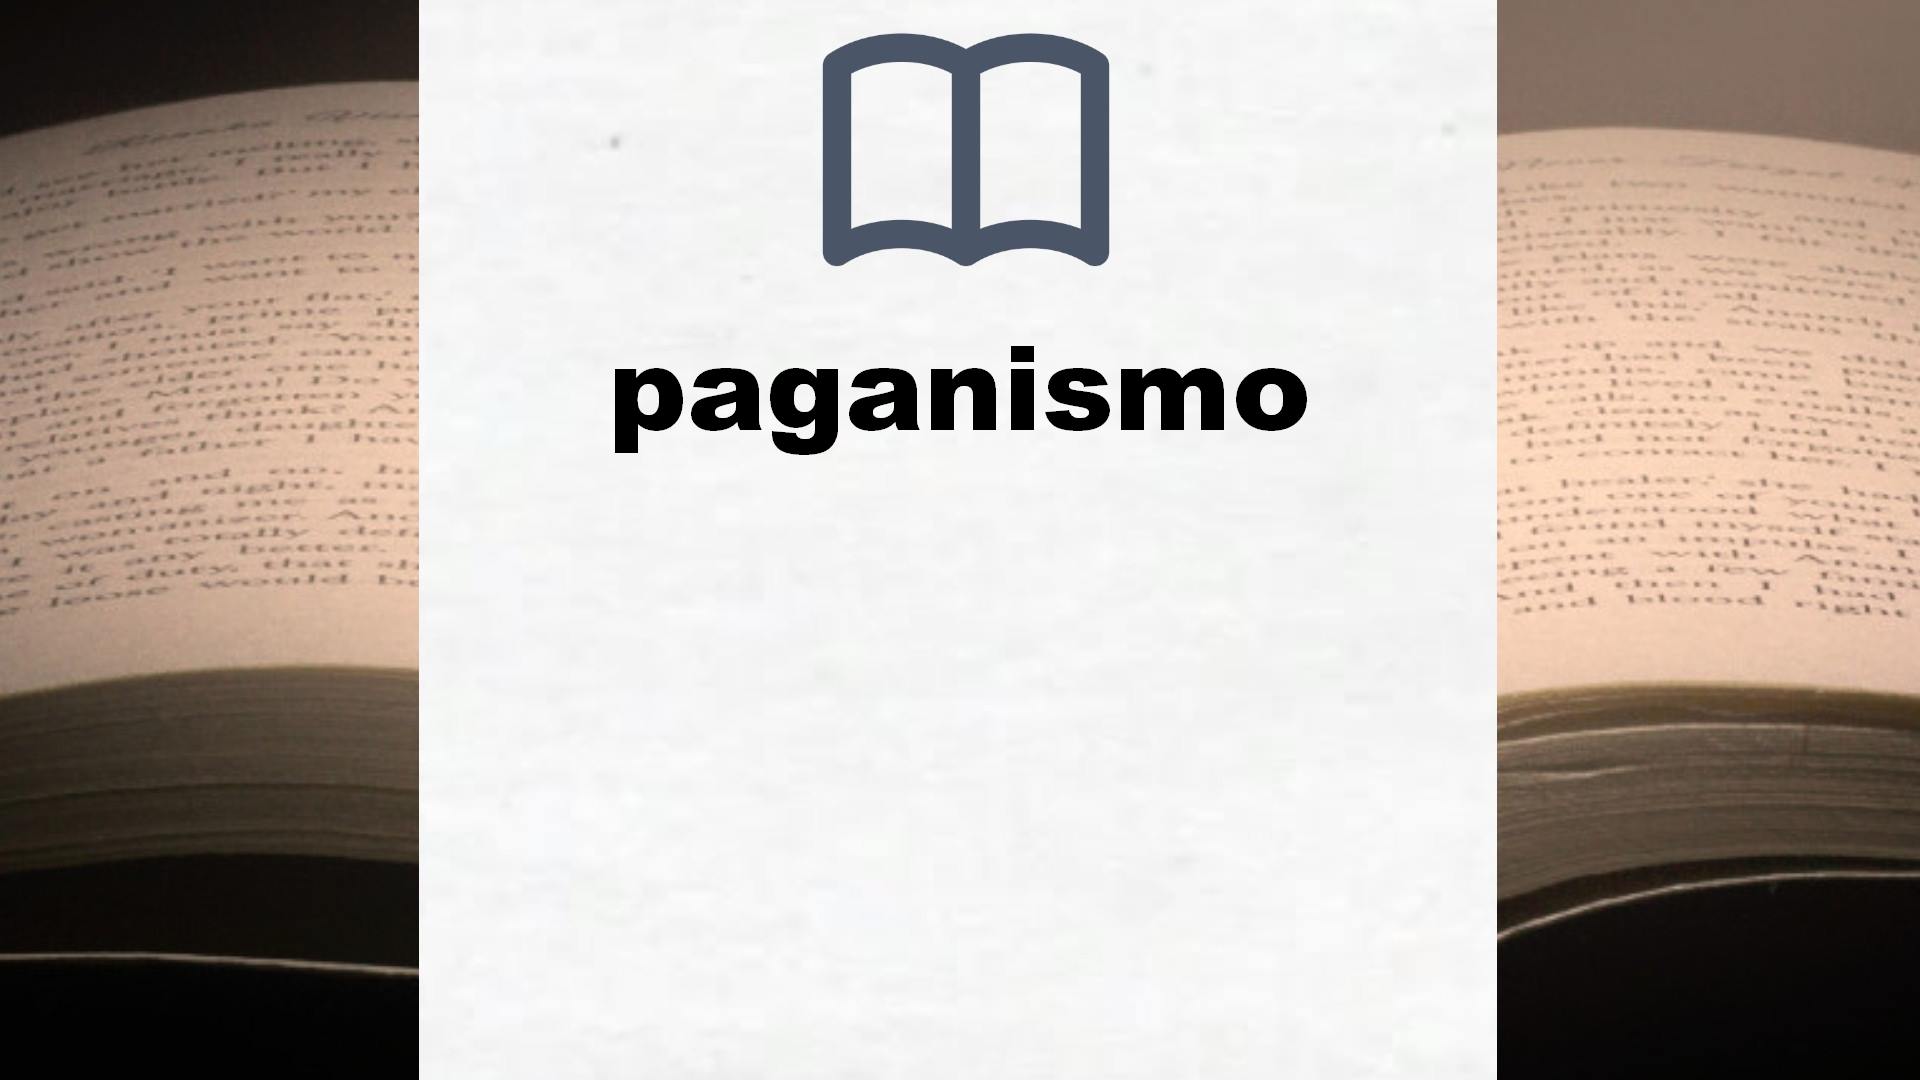 Libros sobre paganismo